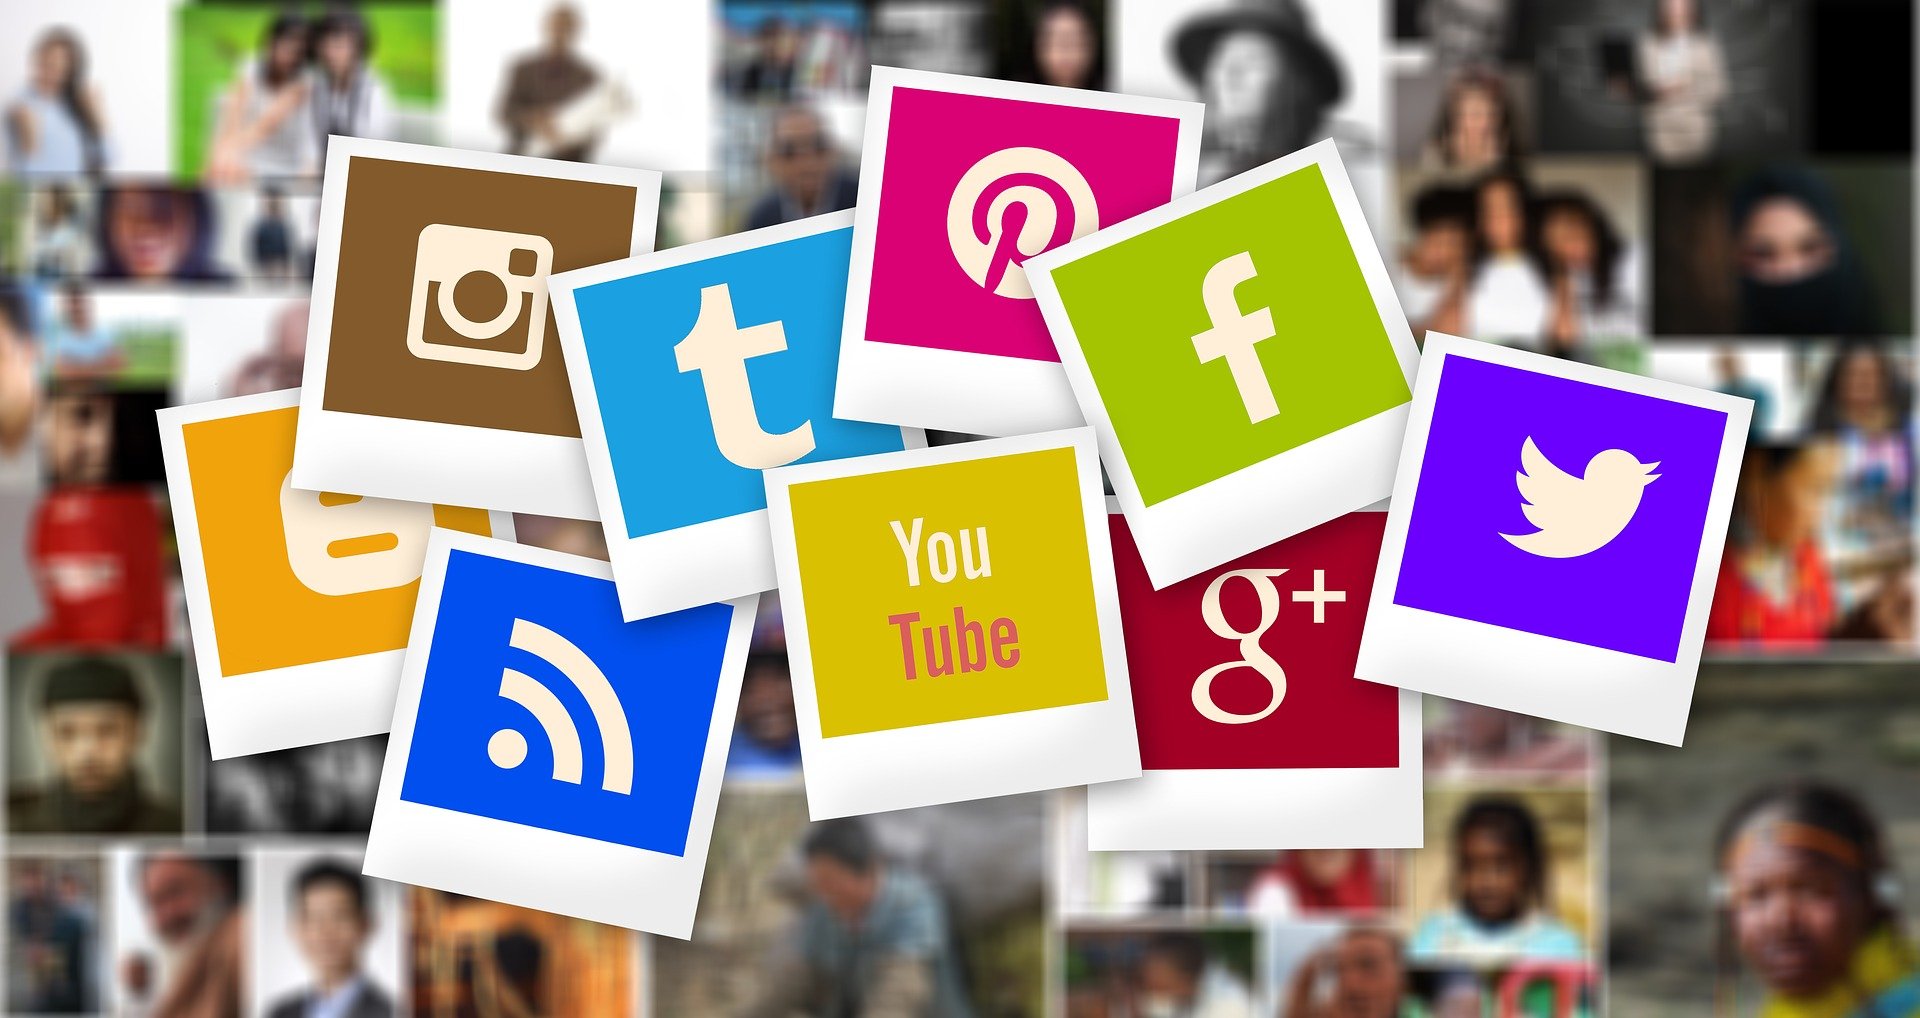 assorted social media platform logos